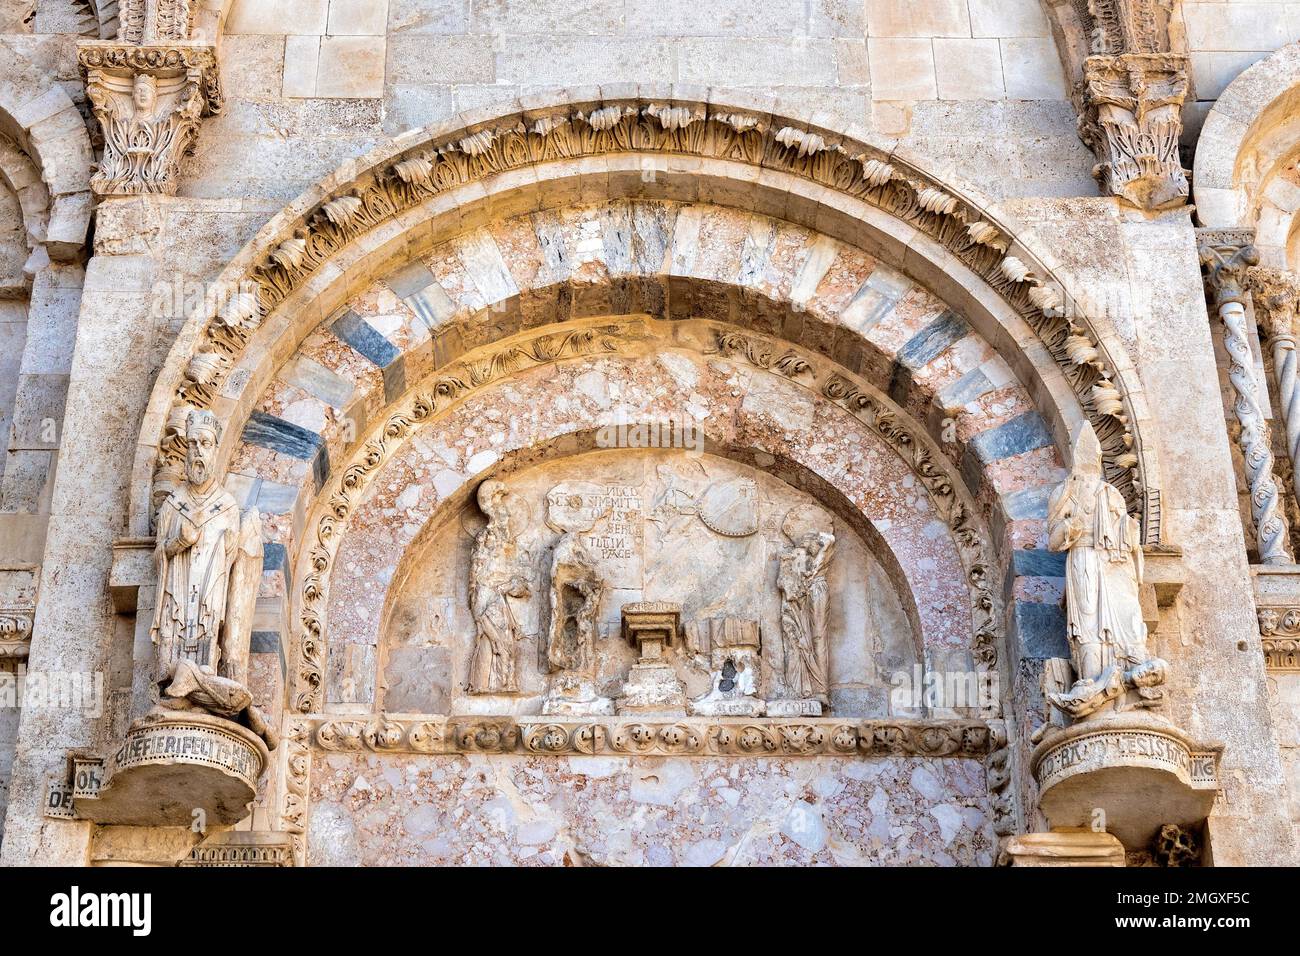 Lunette sur le portail principal de la cathédrale, Termoli, Italie Banque D'Images